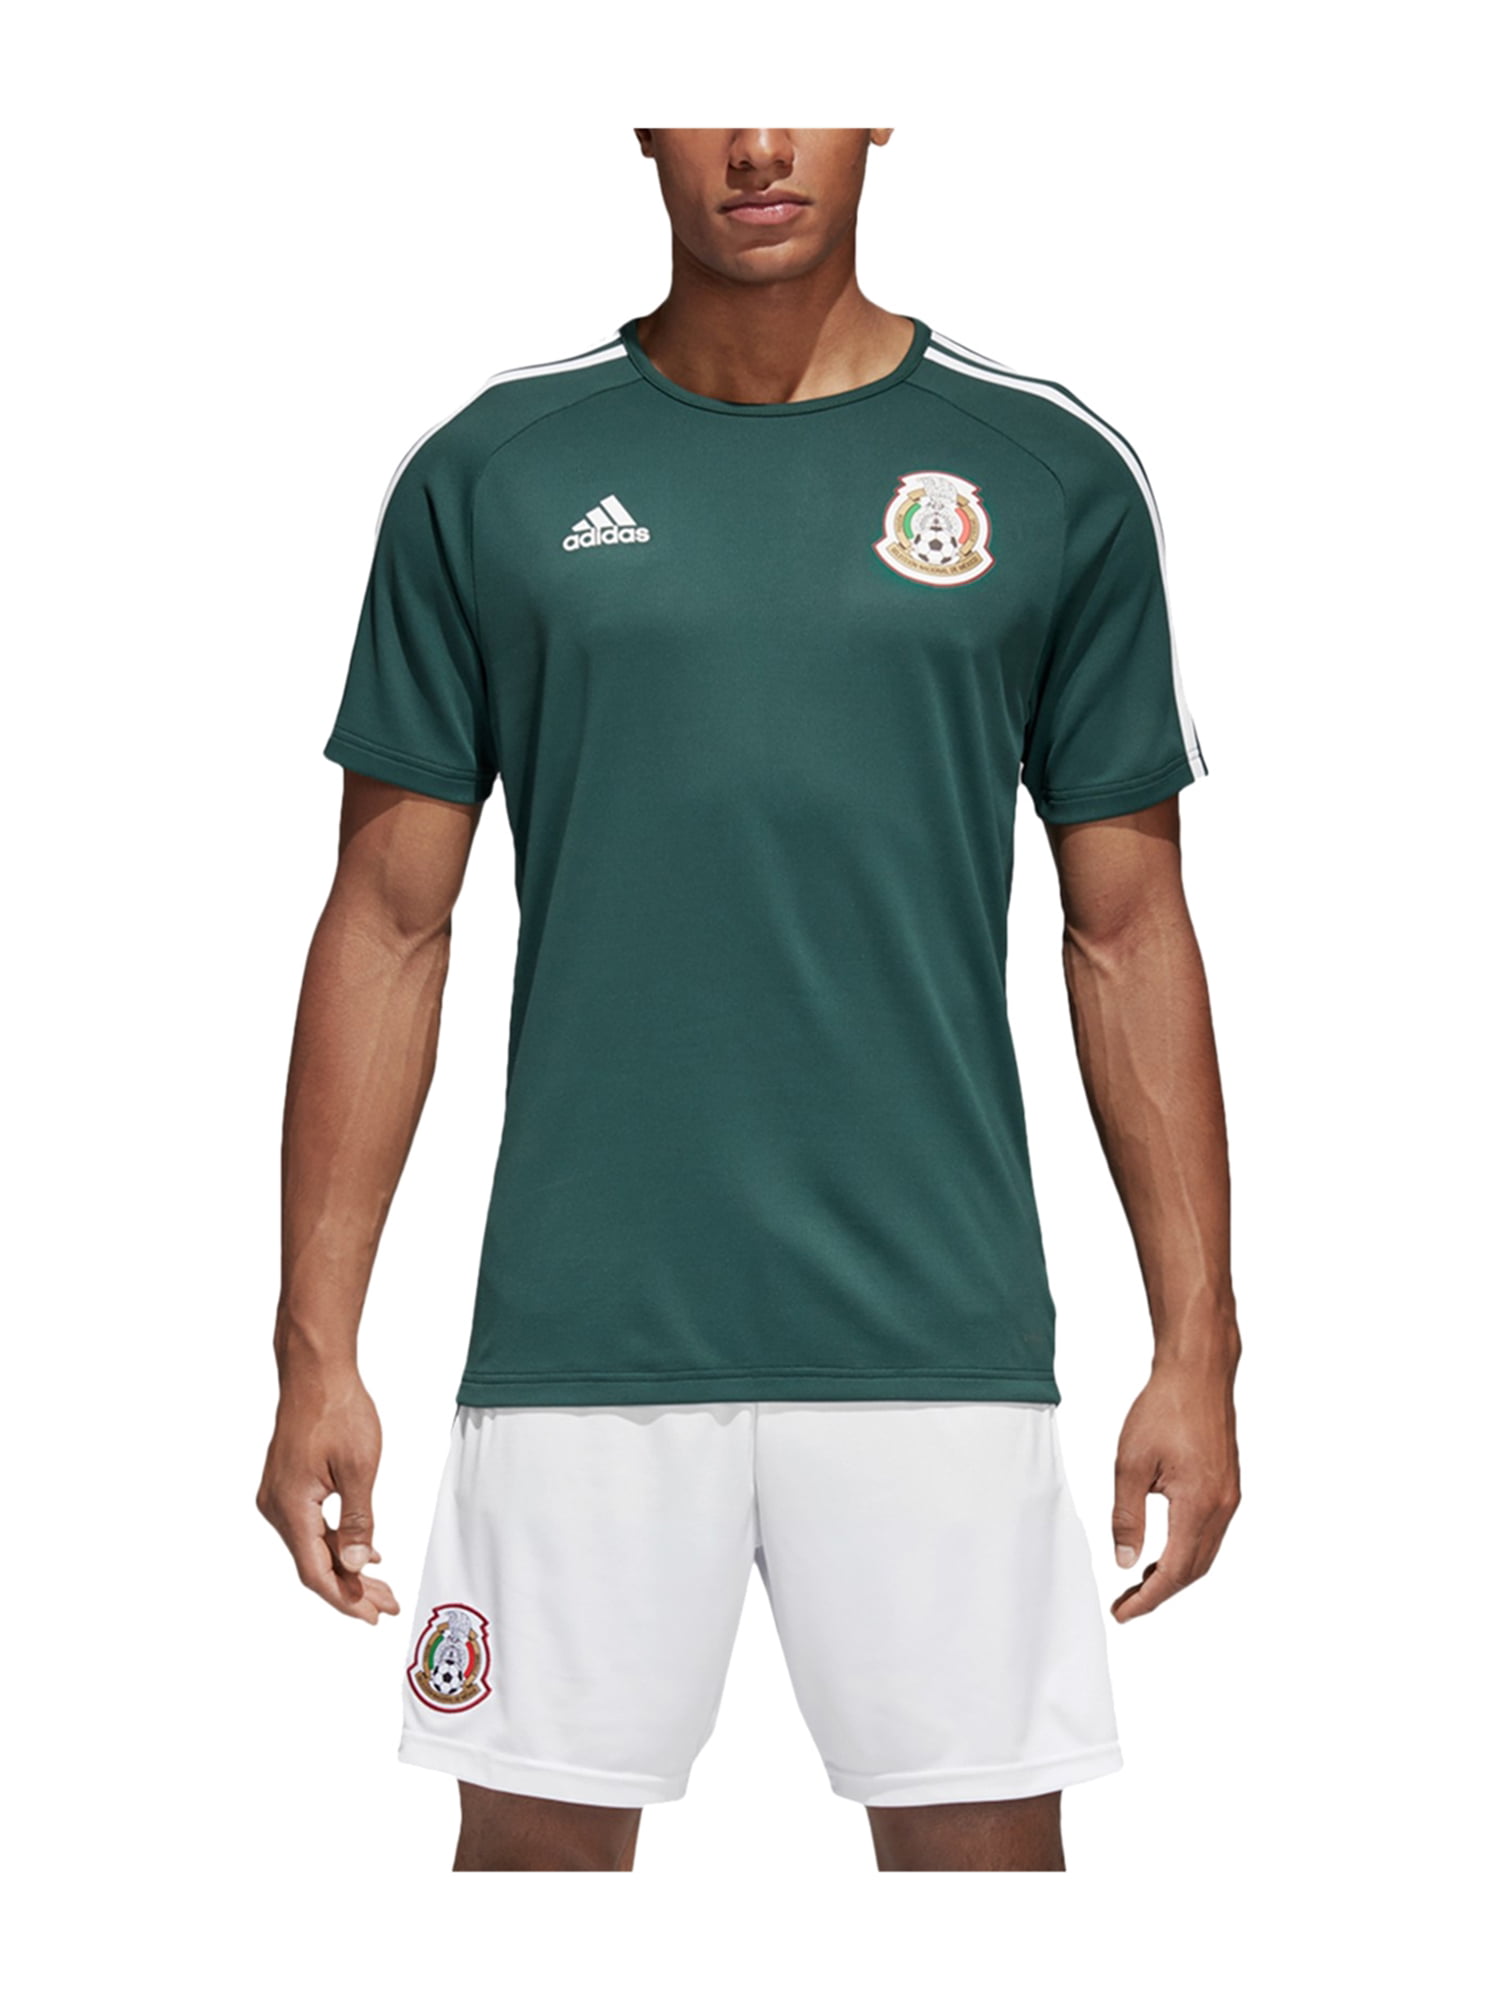 all mexico soccer jerseys